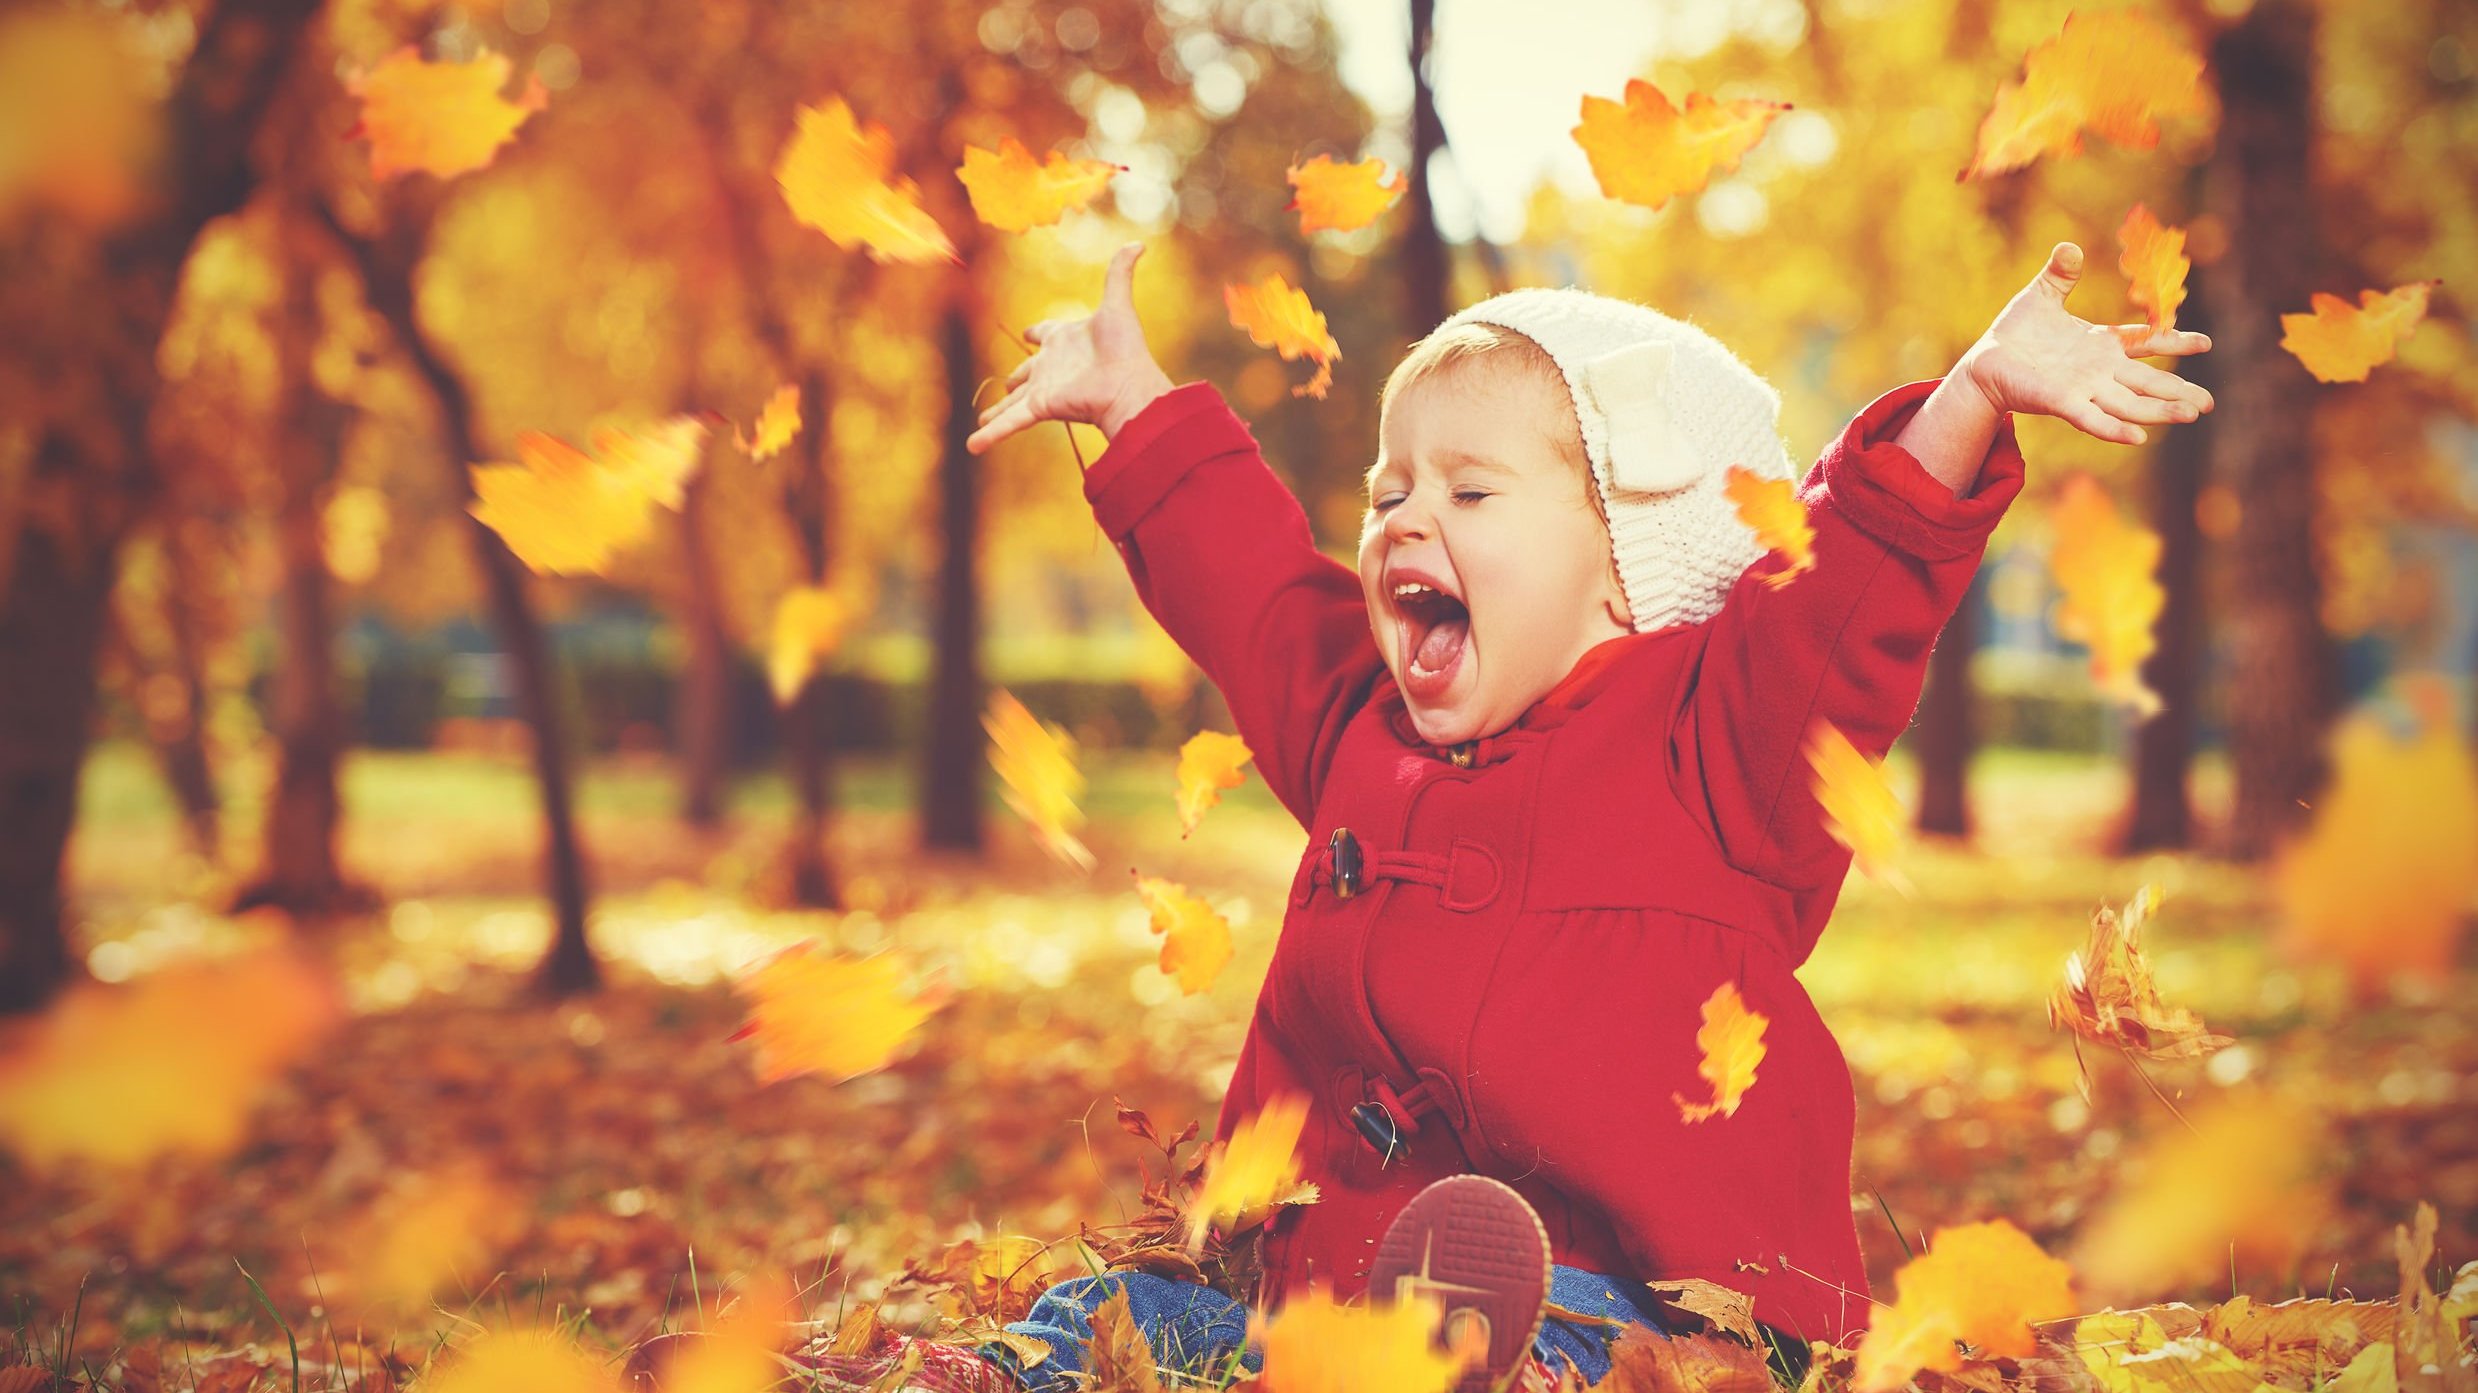 Menina pequena sentada em folhas secas caídas no chão, com os braços para o alto, e a boca aberta em uma risada.